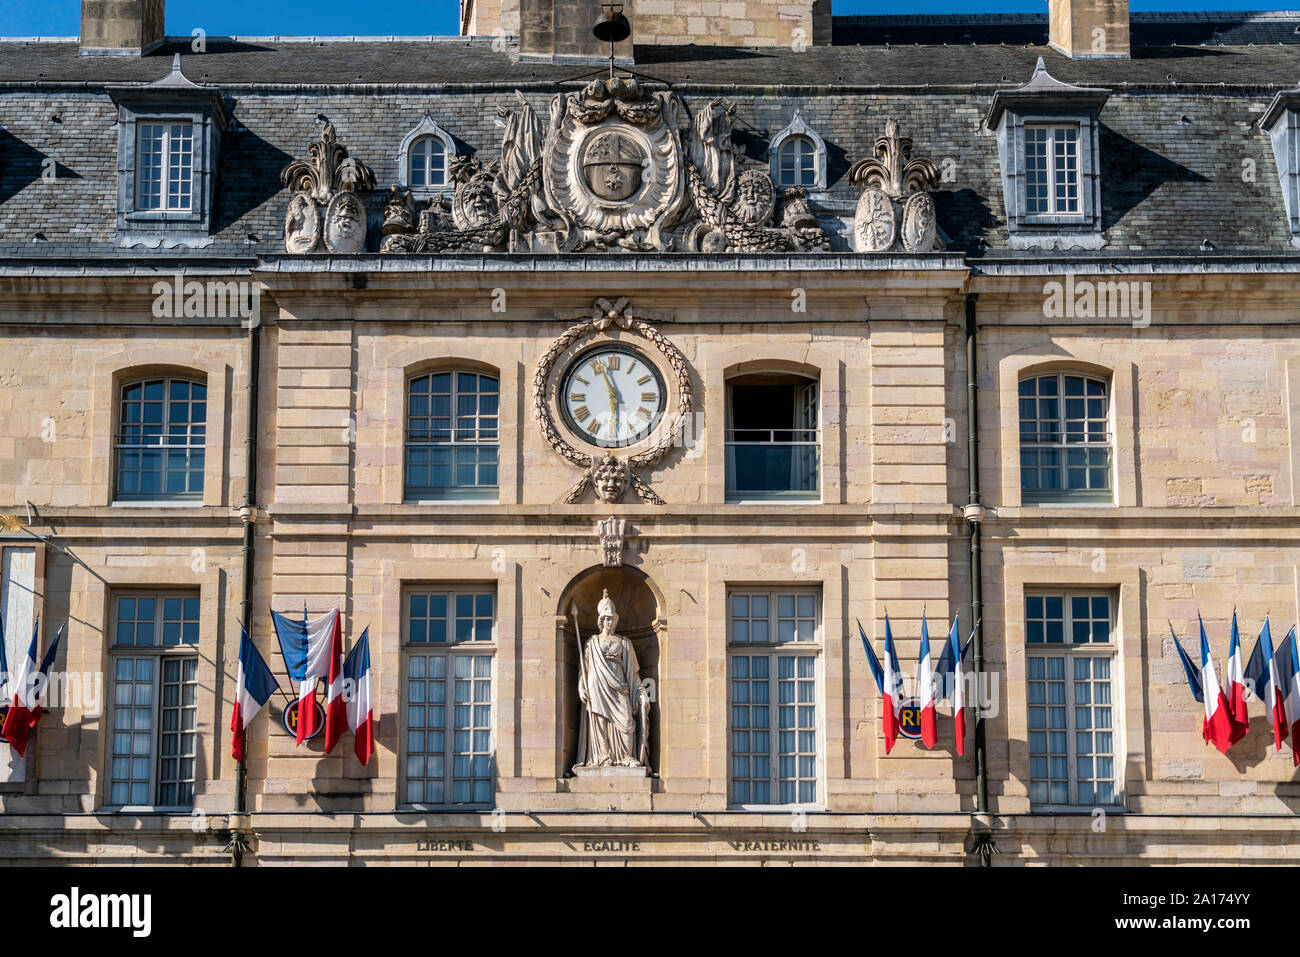 Le palais des ducs de Bourgogne, ducs palace, Place de la Liberation, Burgundy, France Stock Photo